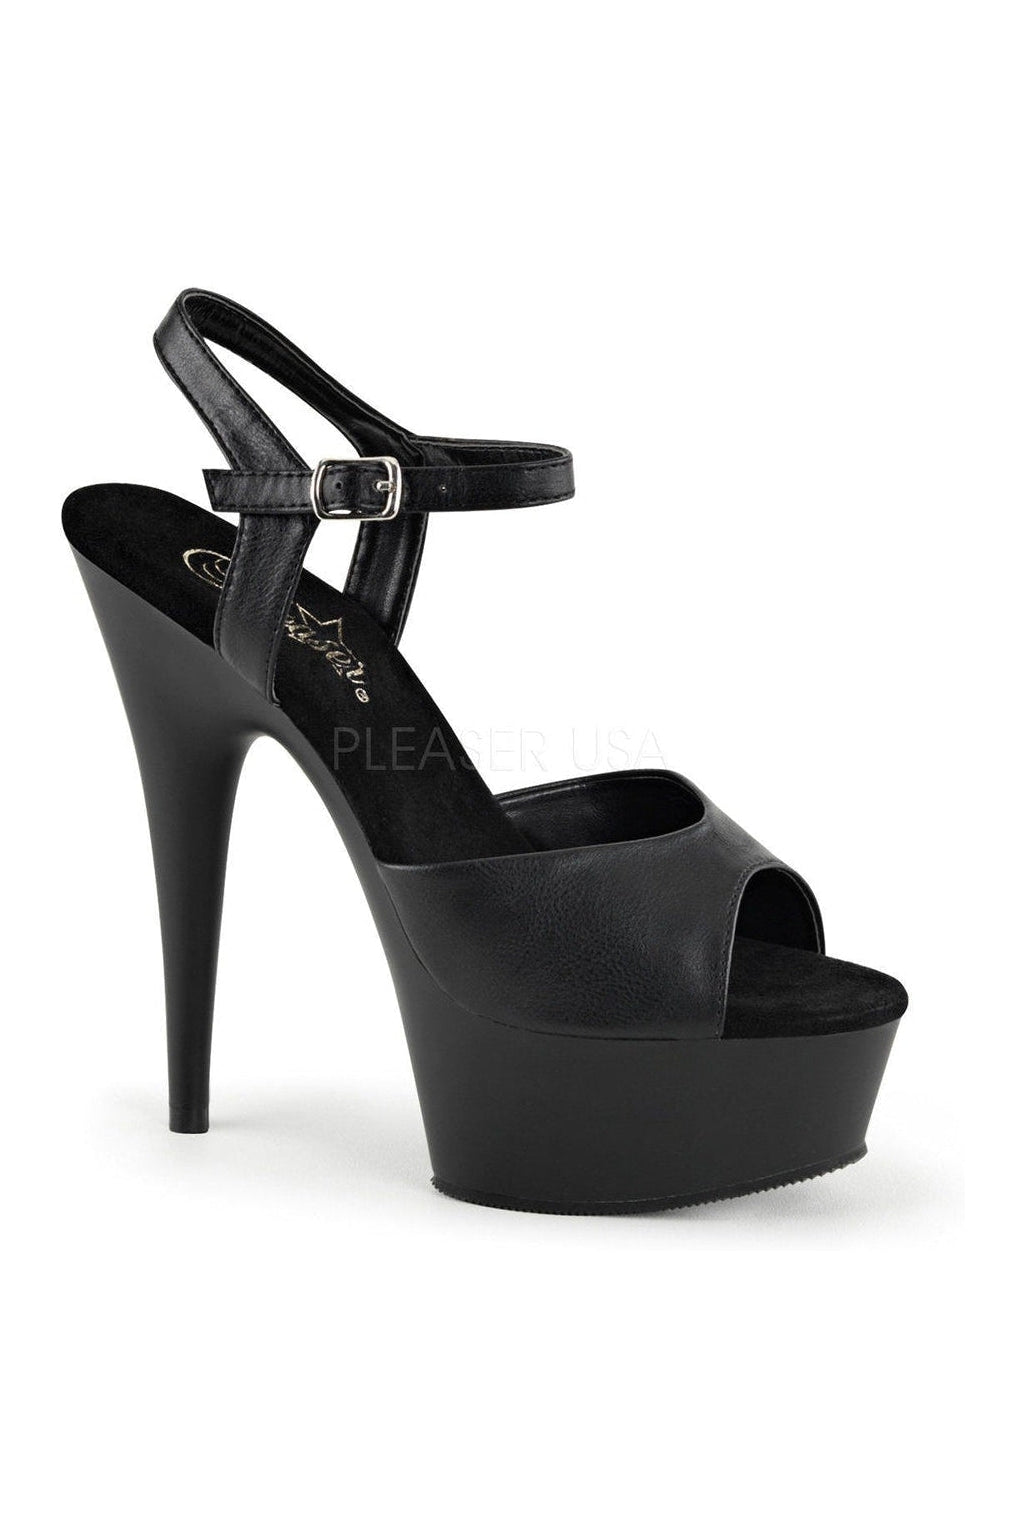 DELIGHT-609 Platform Sandal | Black Faux Leather-Pleaser-Black-Sandals-SEXYSHOES.COM